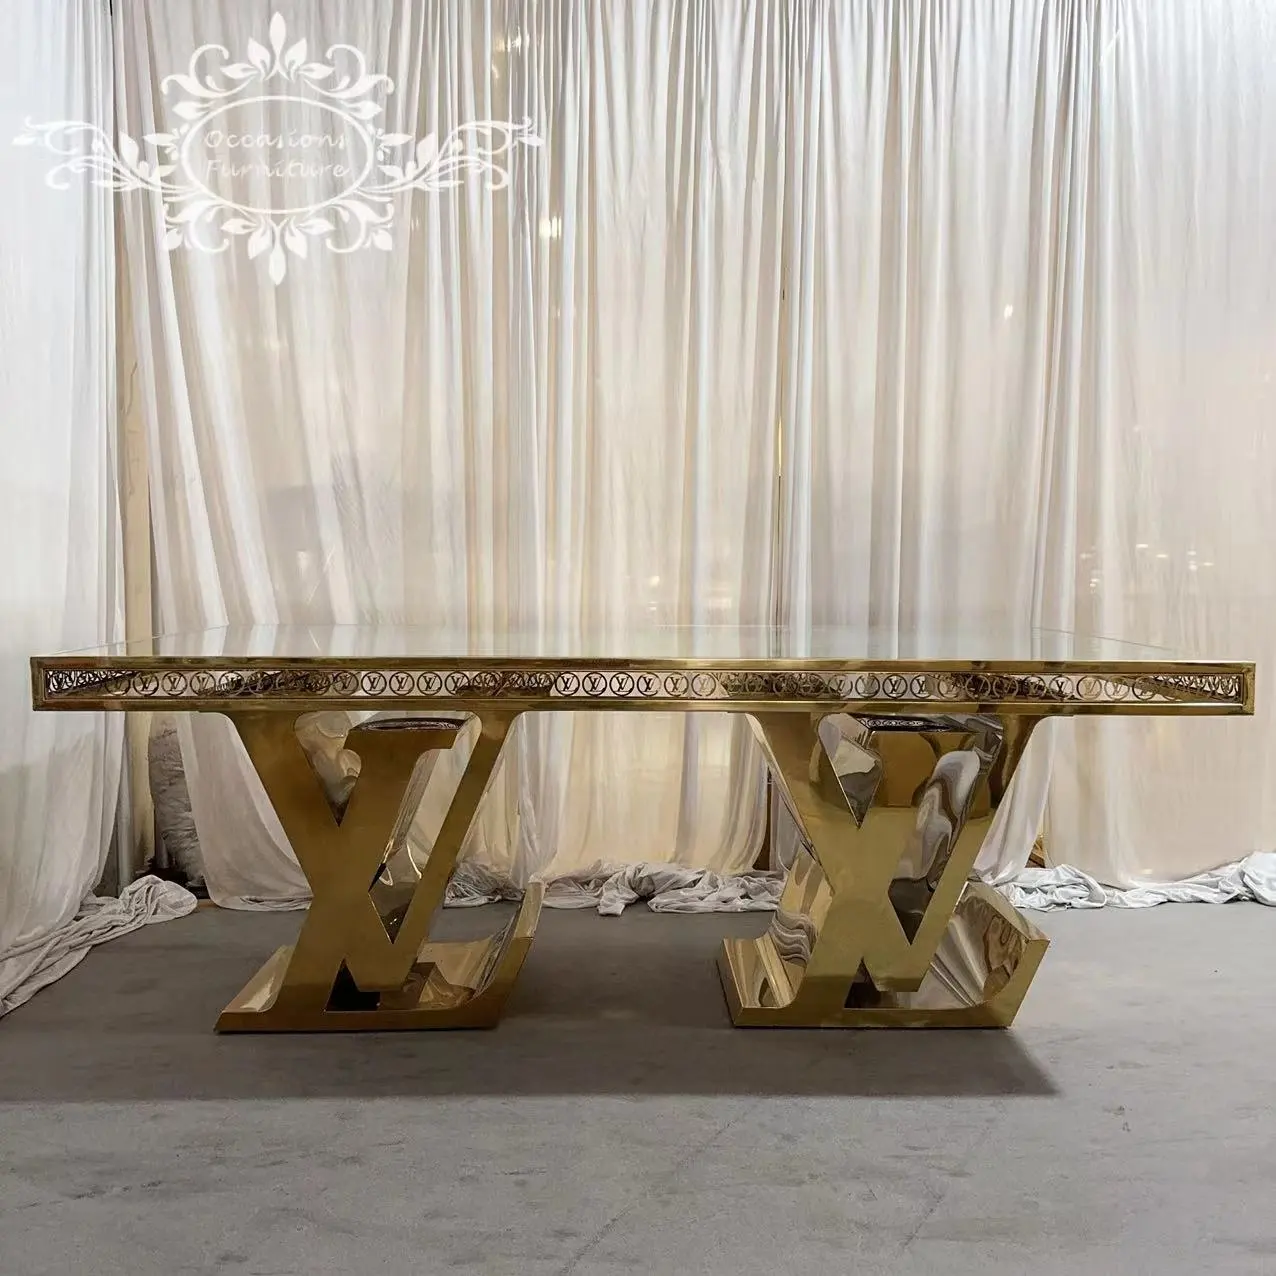 レターLVステンレススチールゴールドウェディングダイニング高級家具テーブル花嫁と花婿の愛のイベントホテルの商業用テーブル